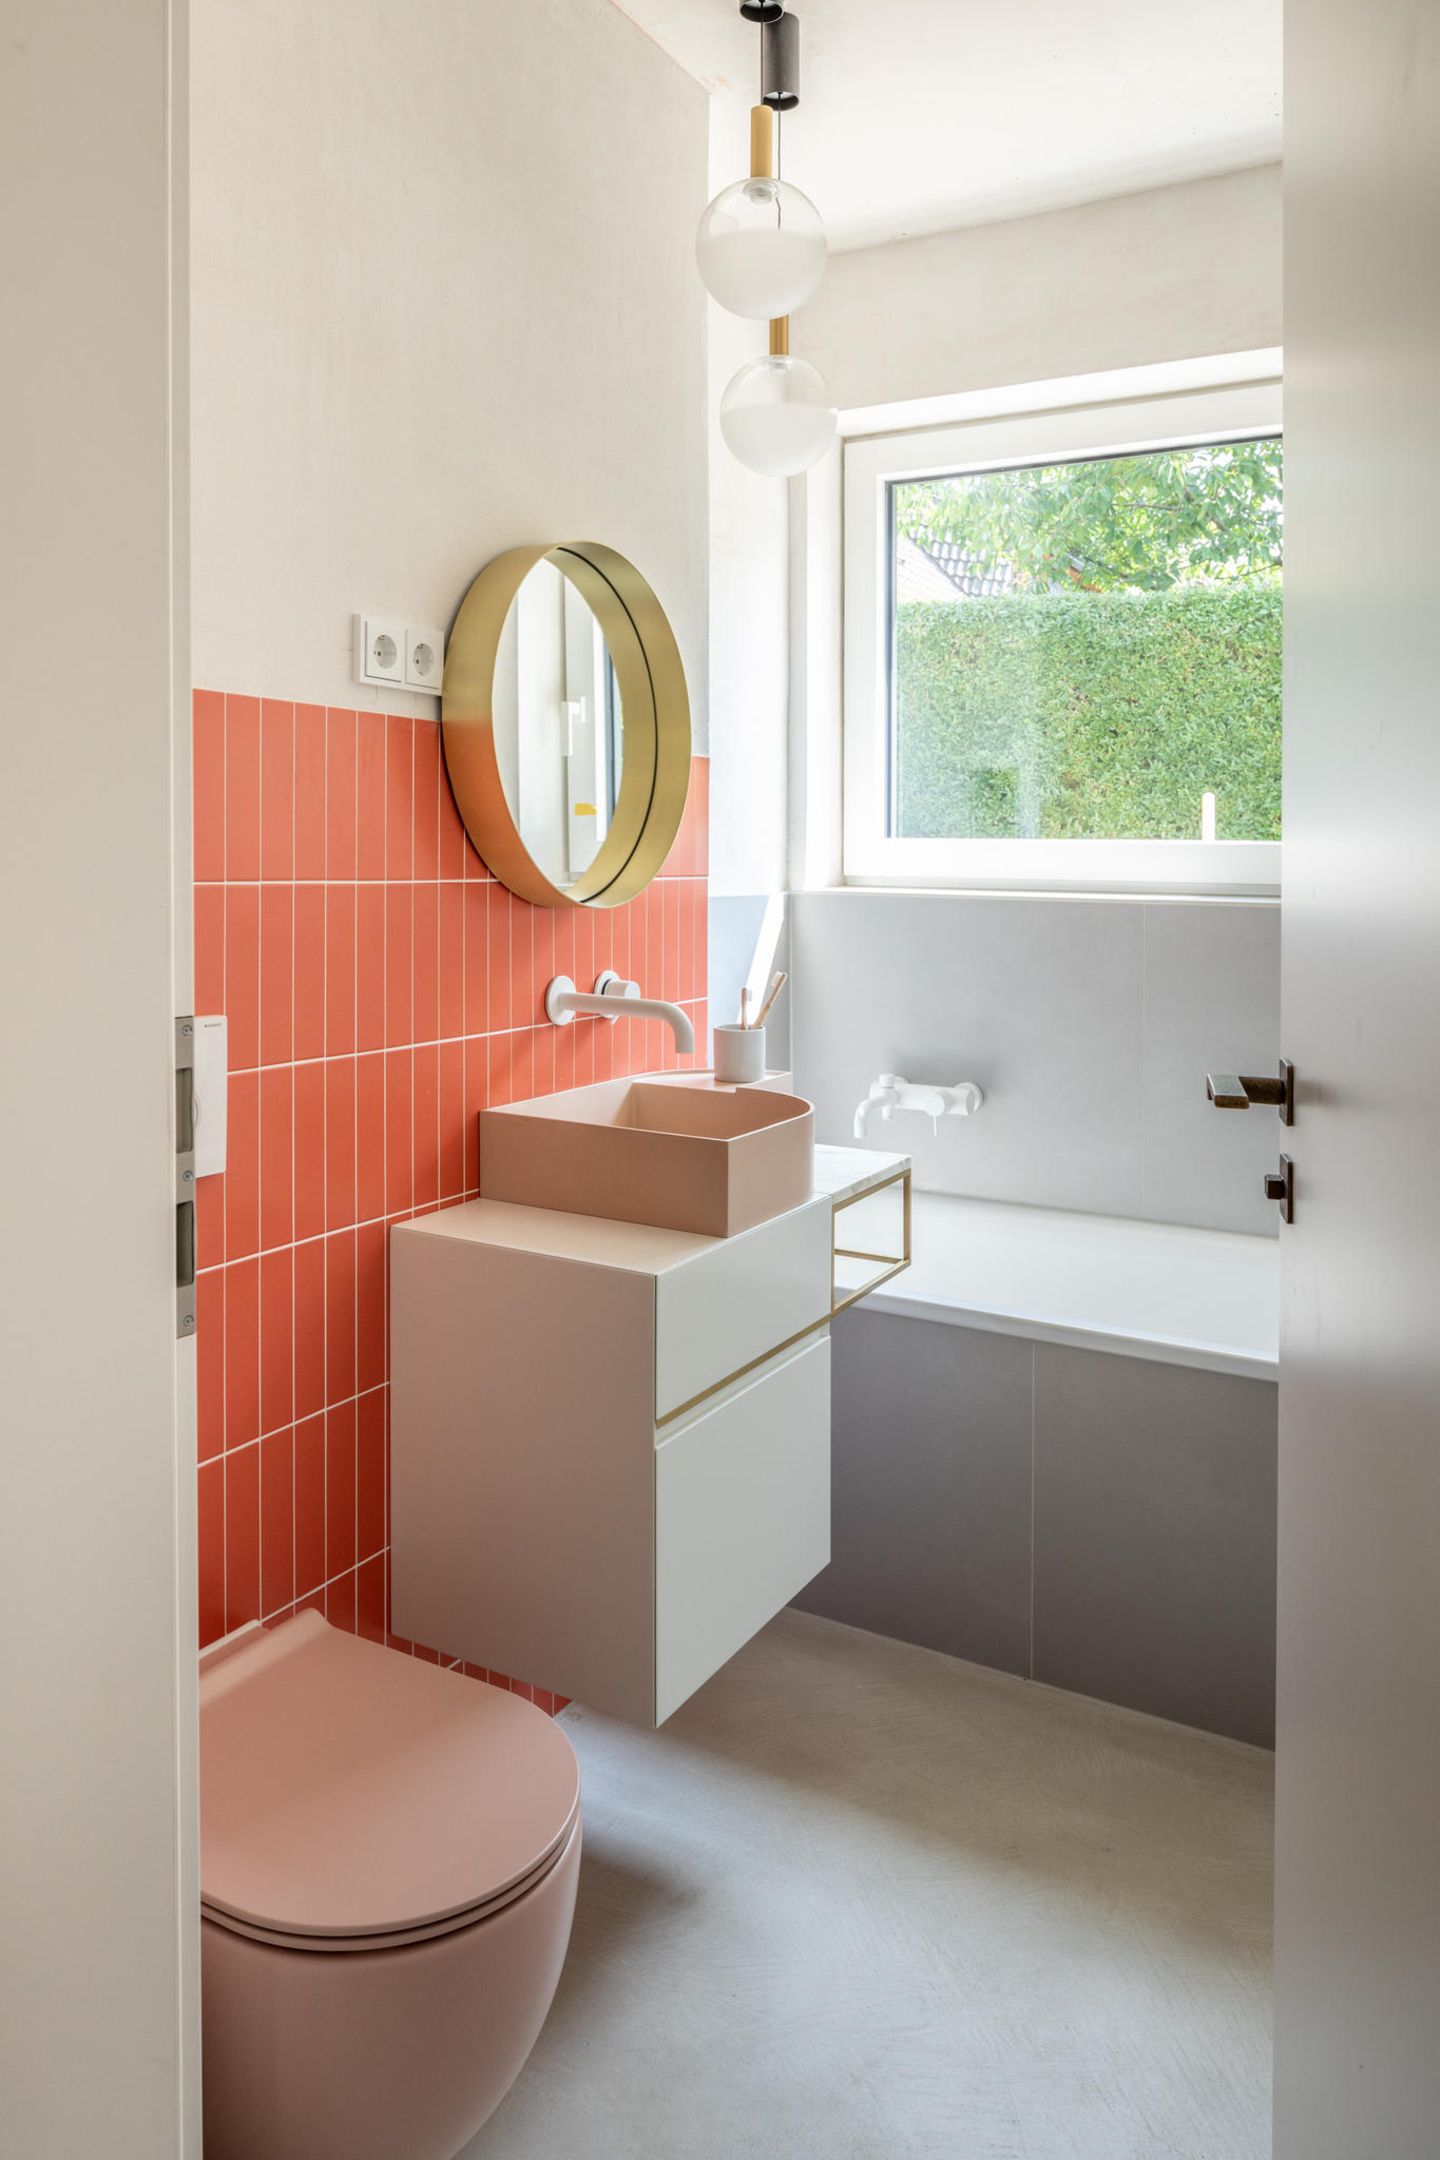 Badezimmer in Orange, Nude und Grau mit einem messingfarbenen Spiegel